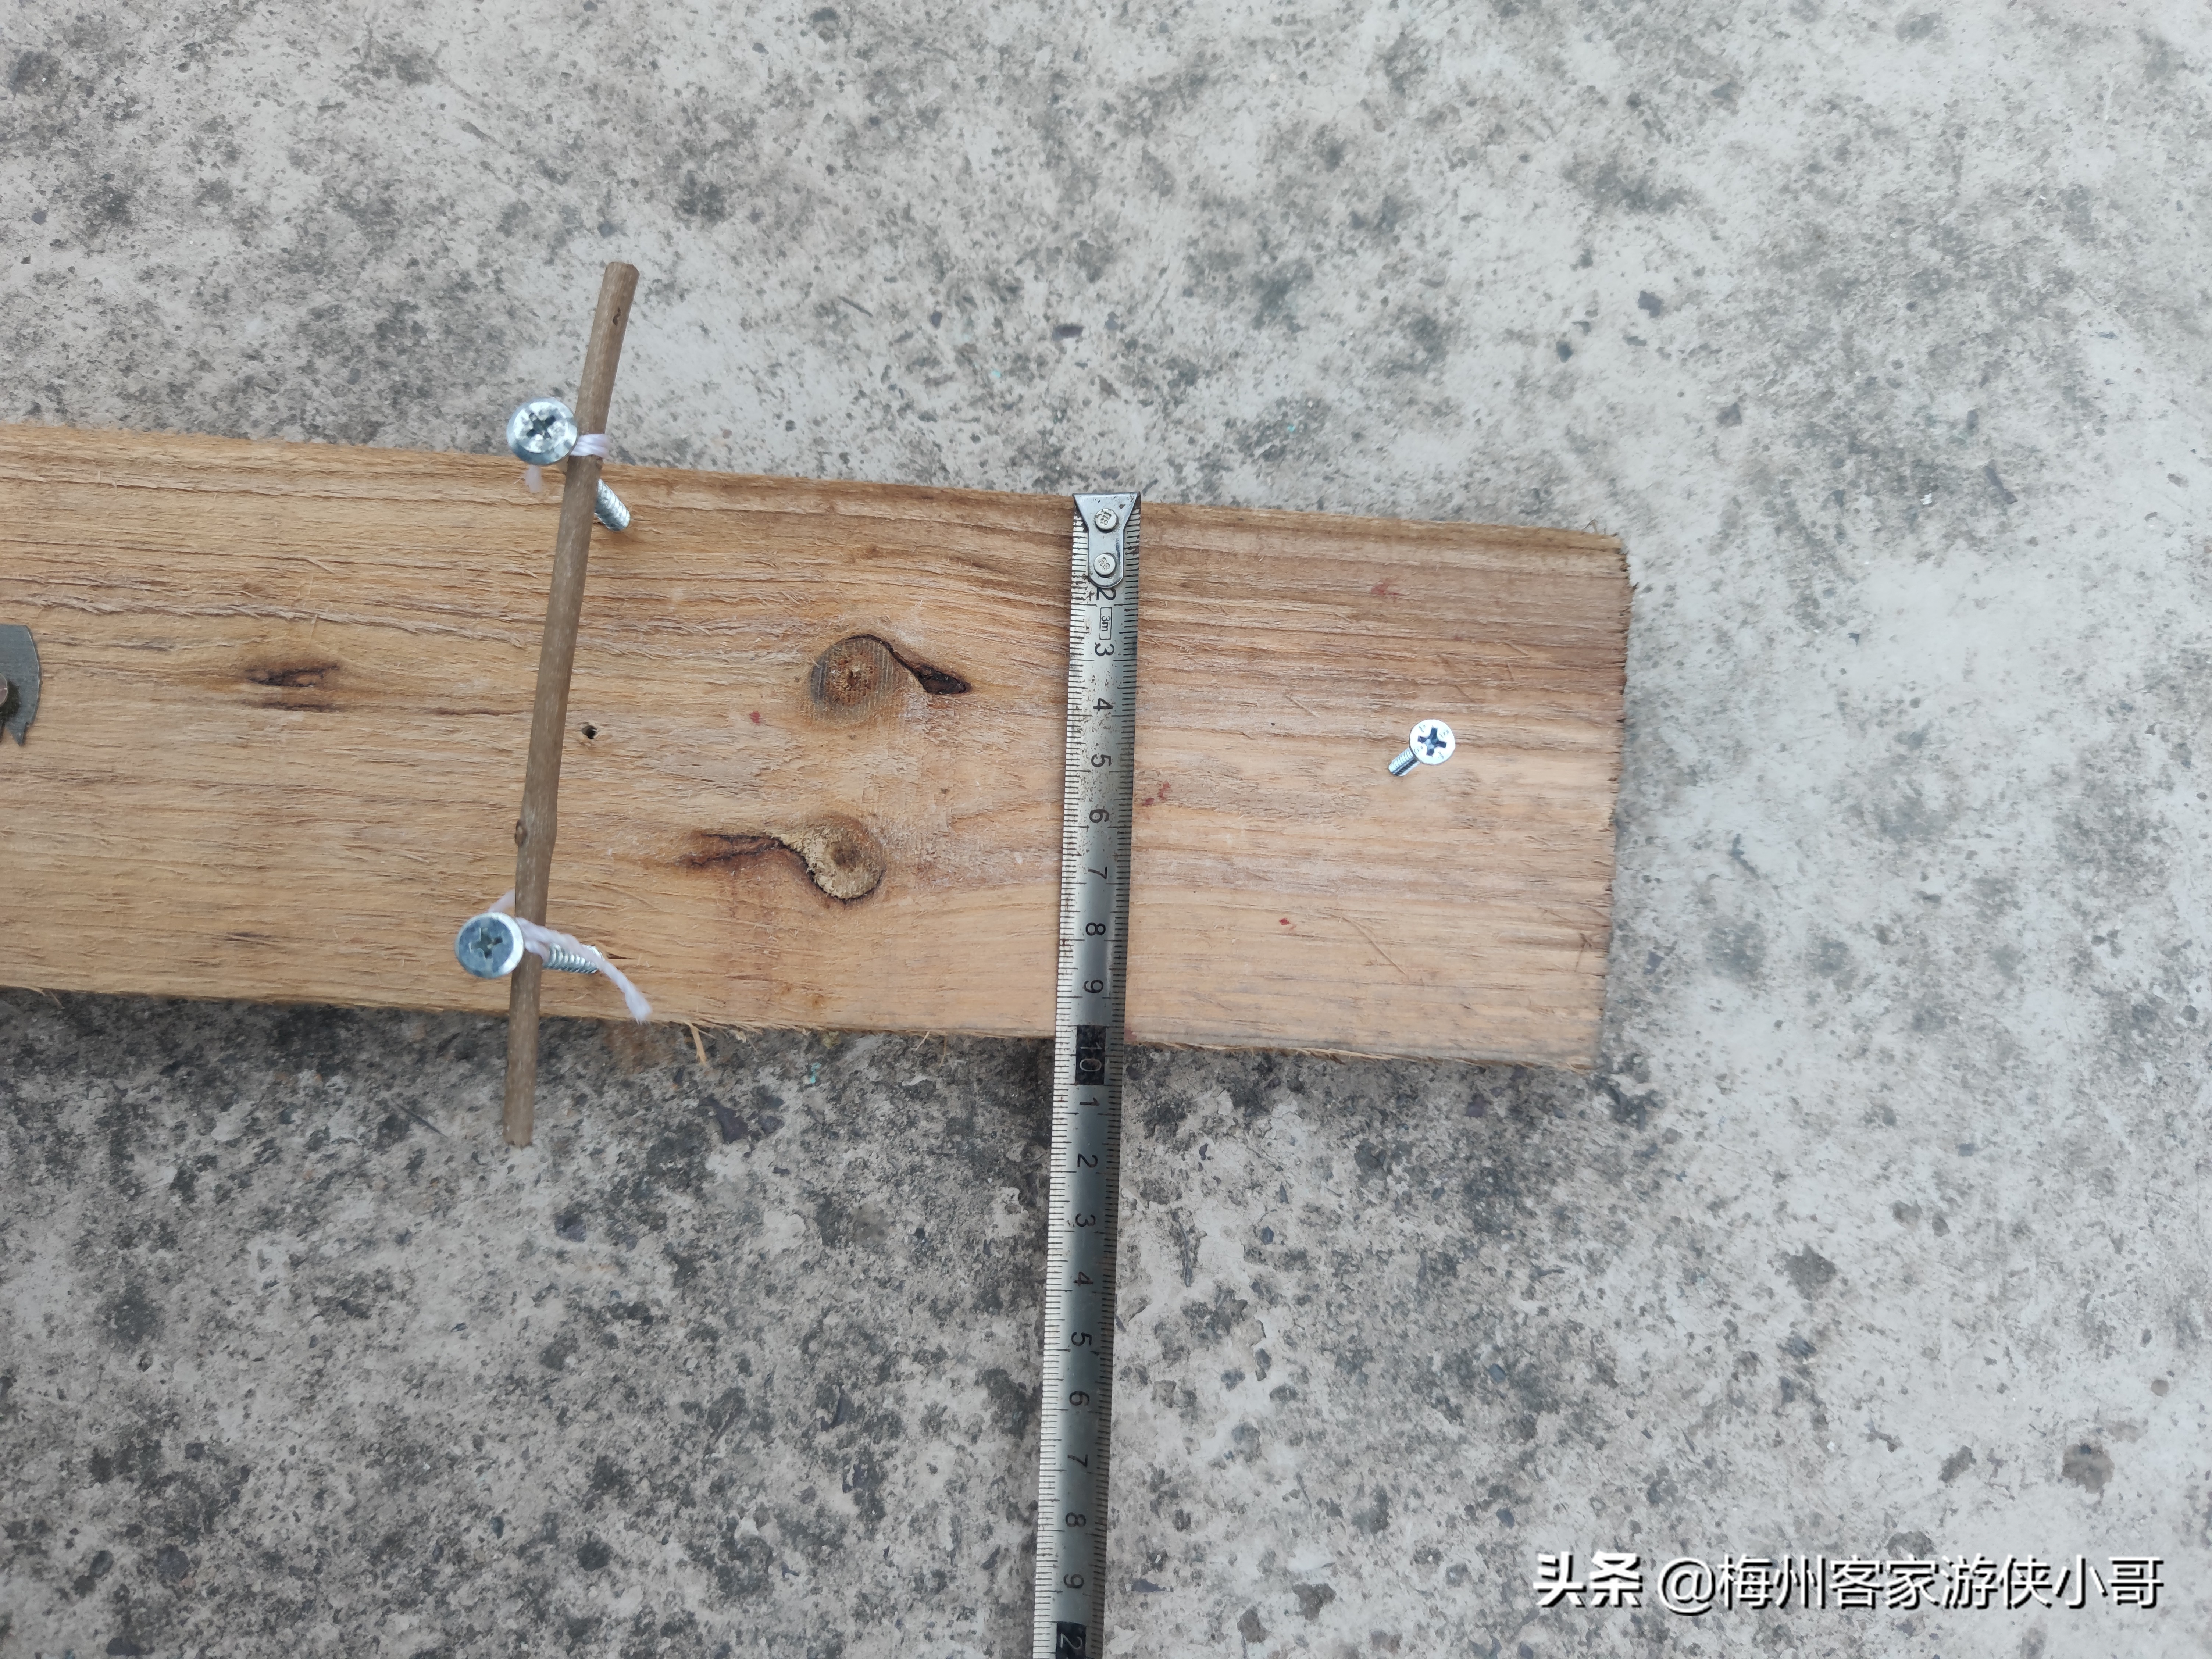 一块木板,一条锯条,三颗钉子,一条绳子做成一种农村的吊脚套